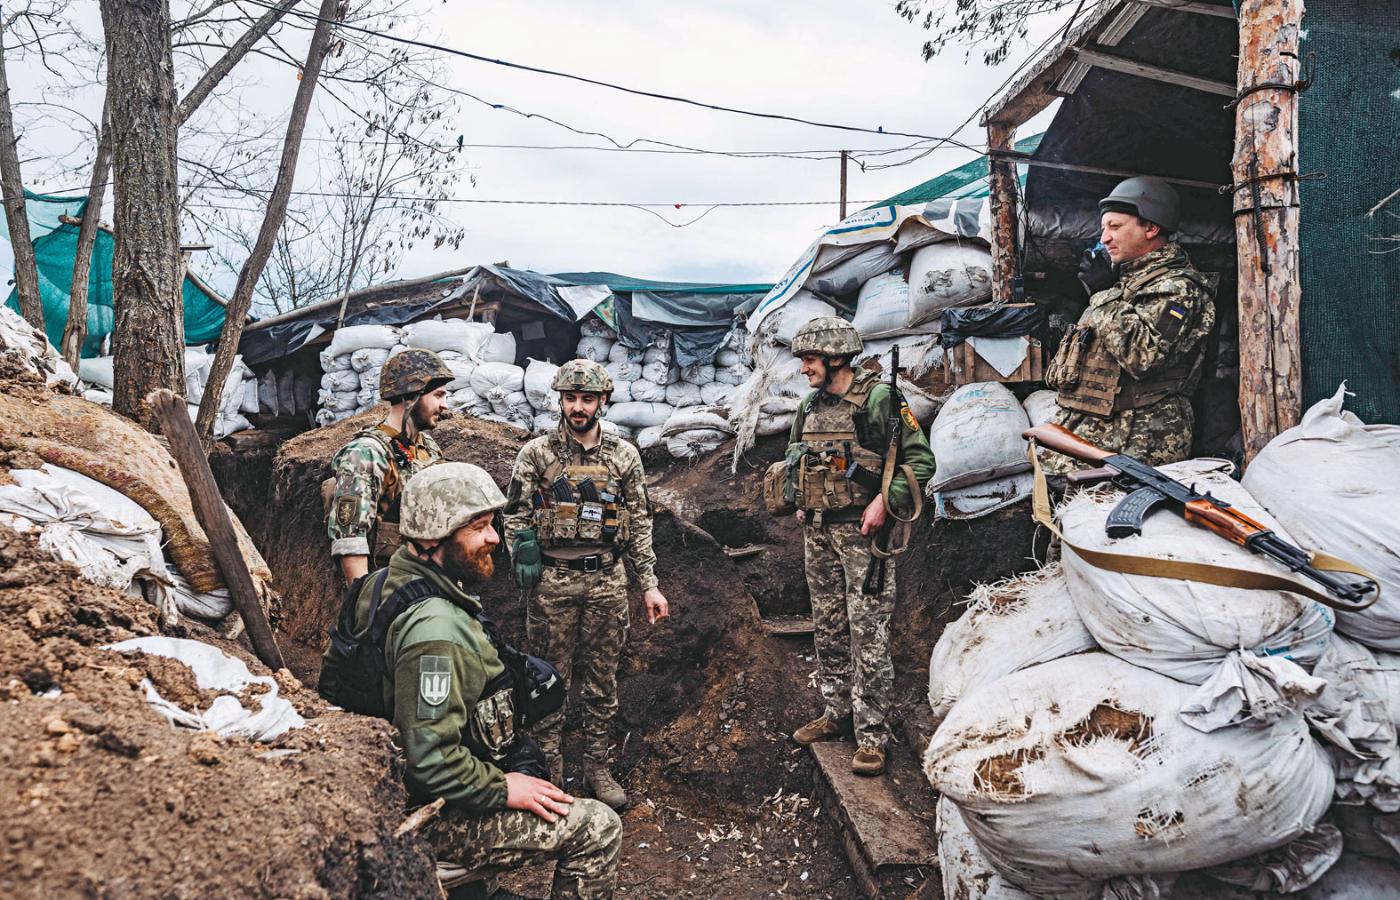 Żołnierze ukraińscy w umocnieniach na granicach Donbasu. W jednym ze scenariuszy wojna w Ukrainie może zamienić się w długotrwałą wojnę pozycyjną.